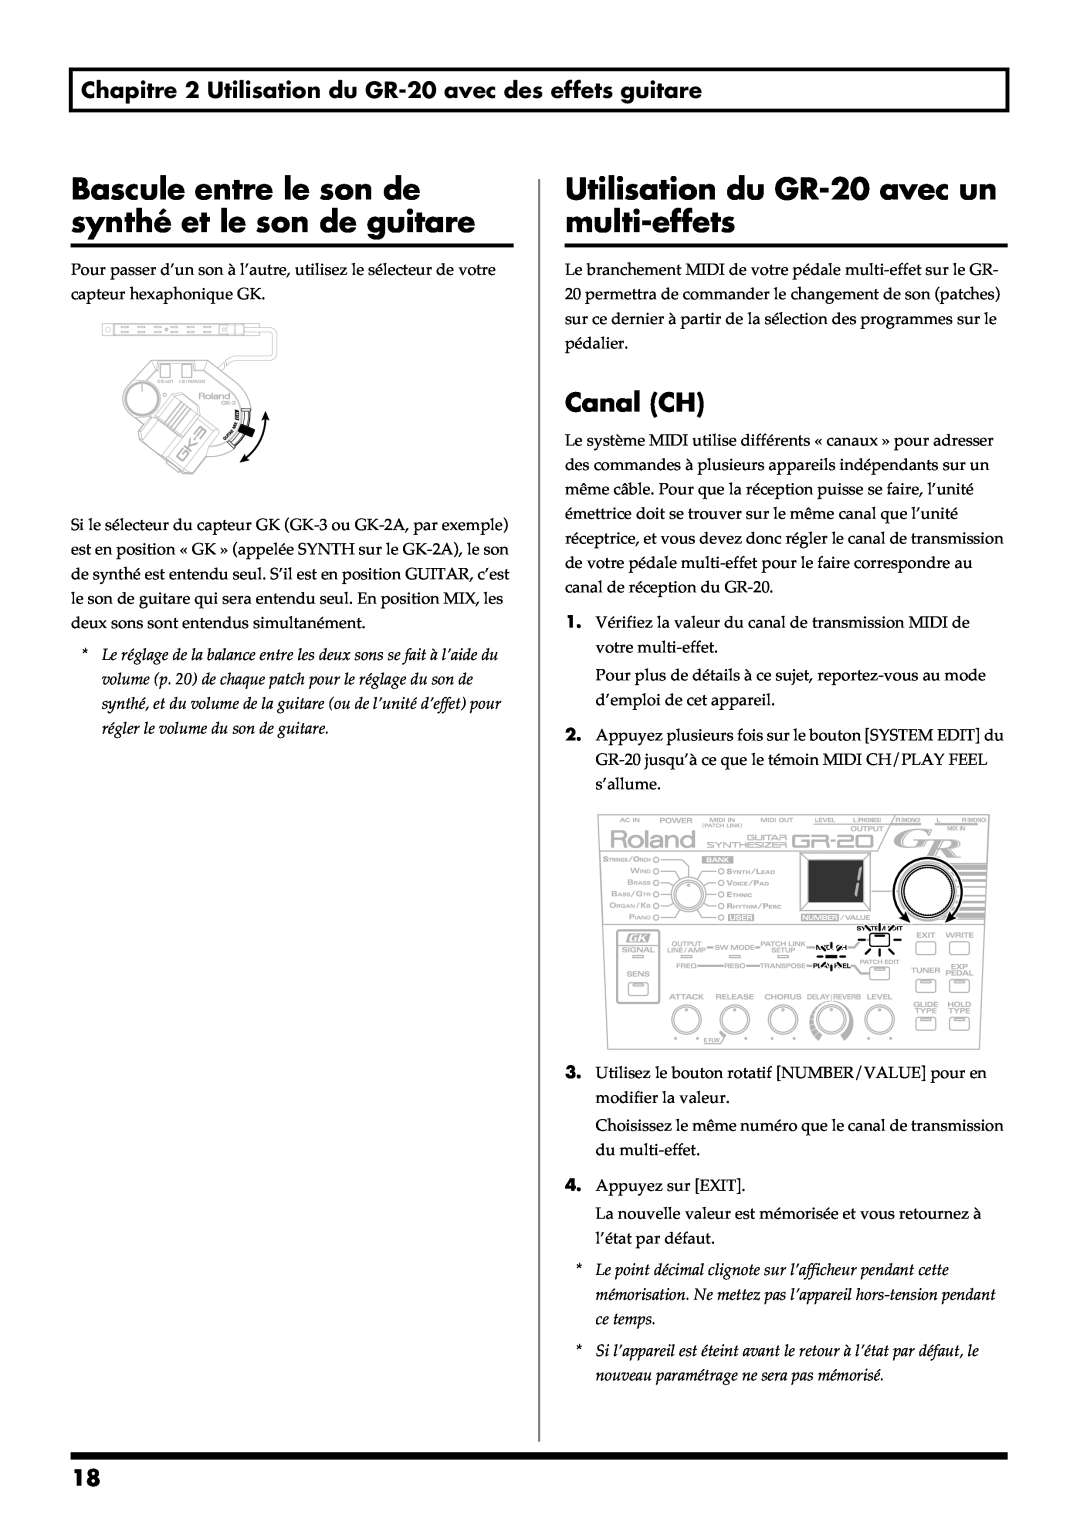 Roland manual Utilisation du GR-20avec un multi-effets, Canal CH 